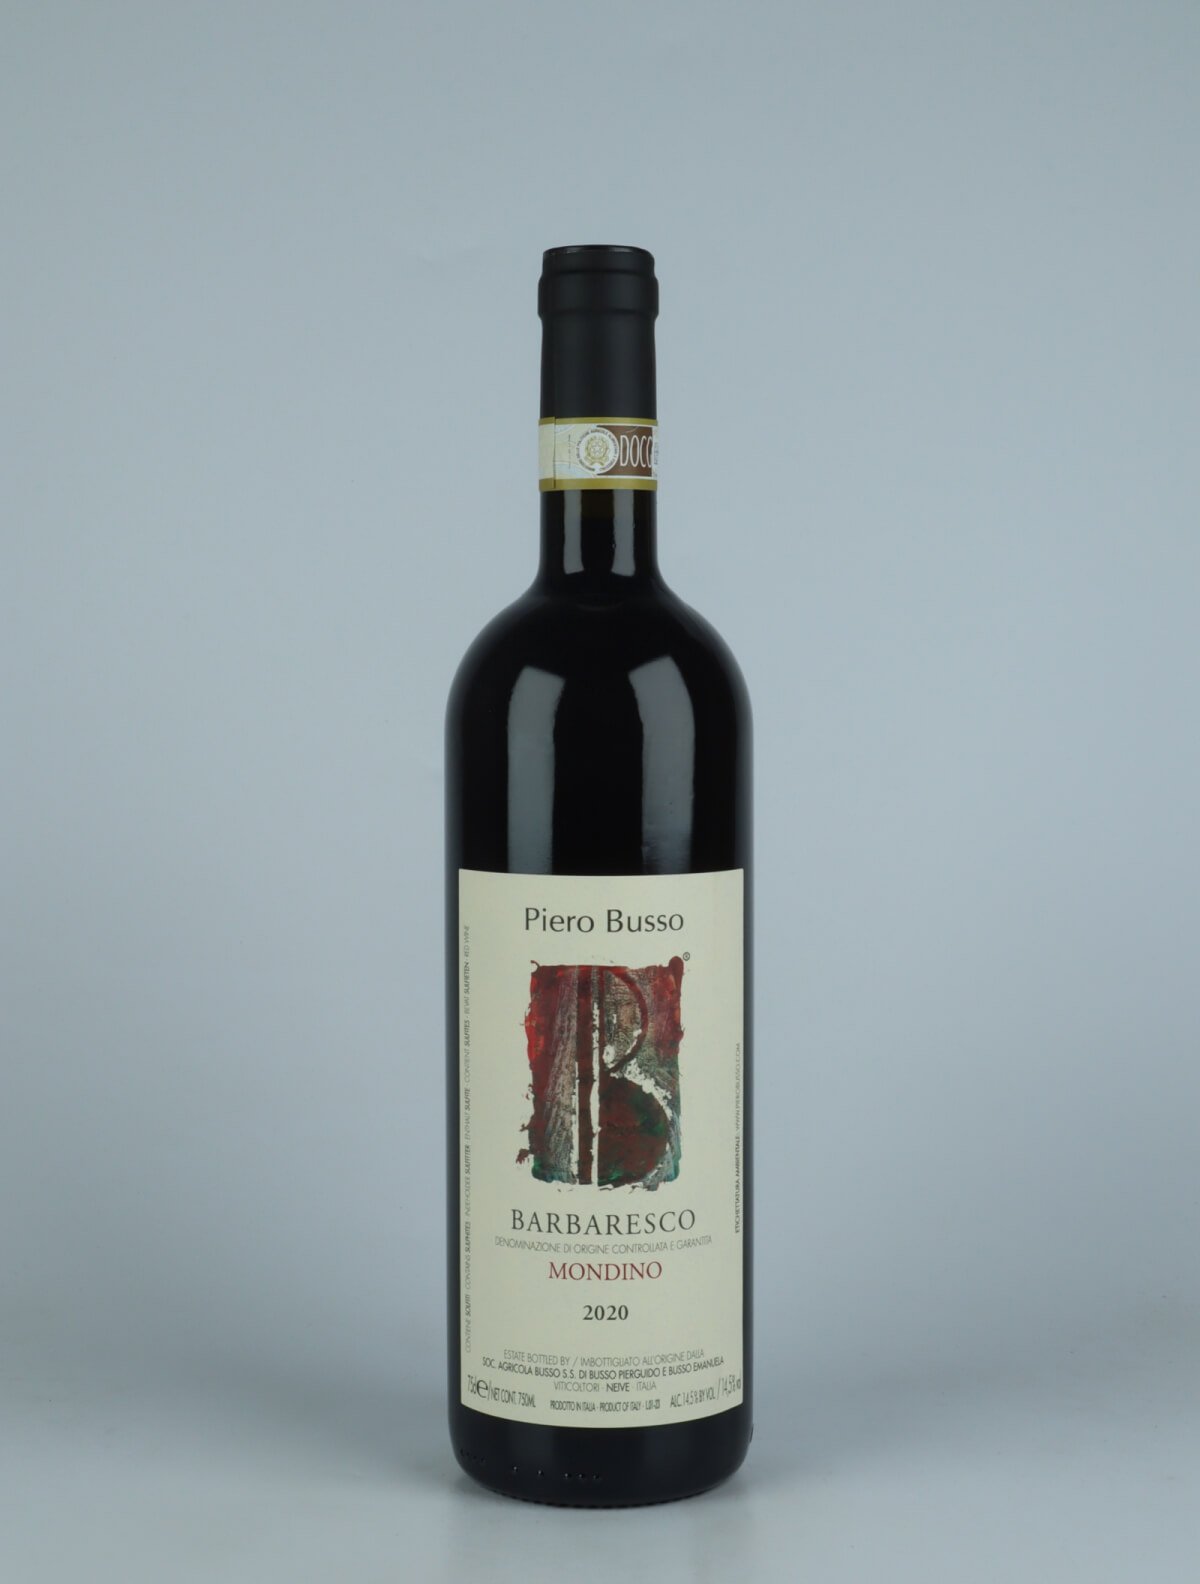 En flaske 2020 Barbaresco Mondino Rødvin fra Piero Busso, Piemonte i Italien